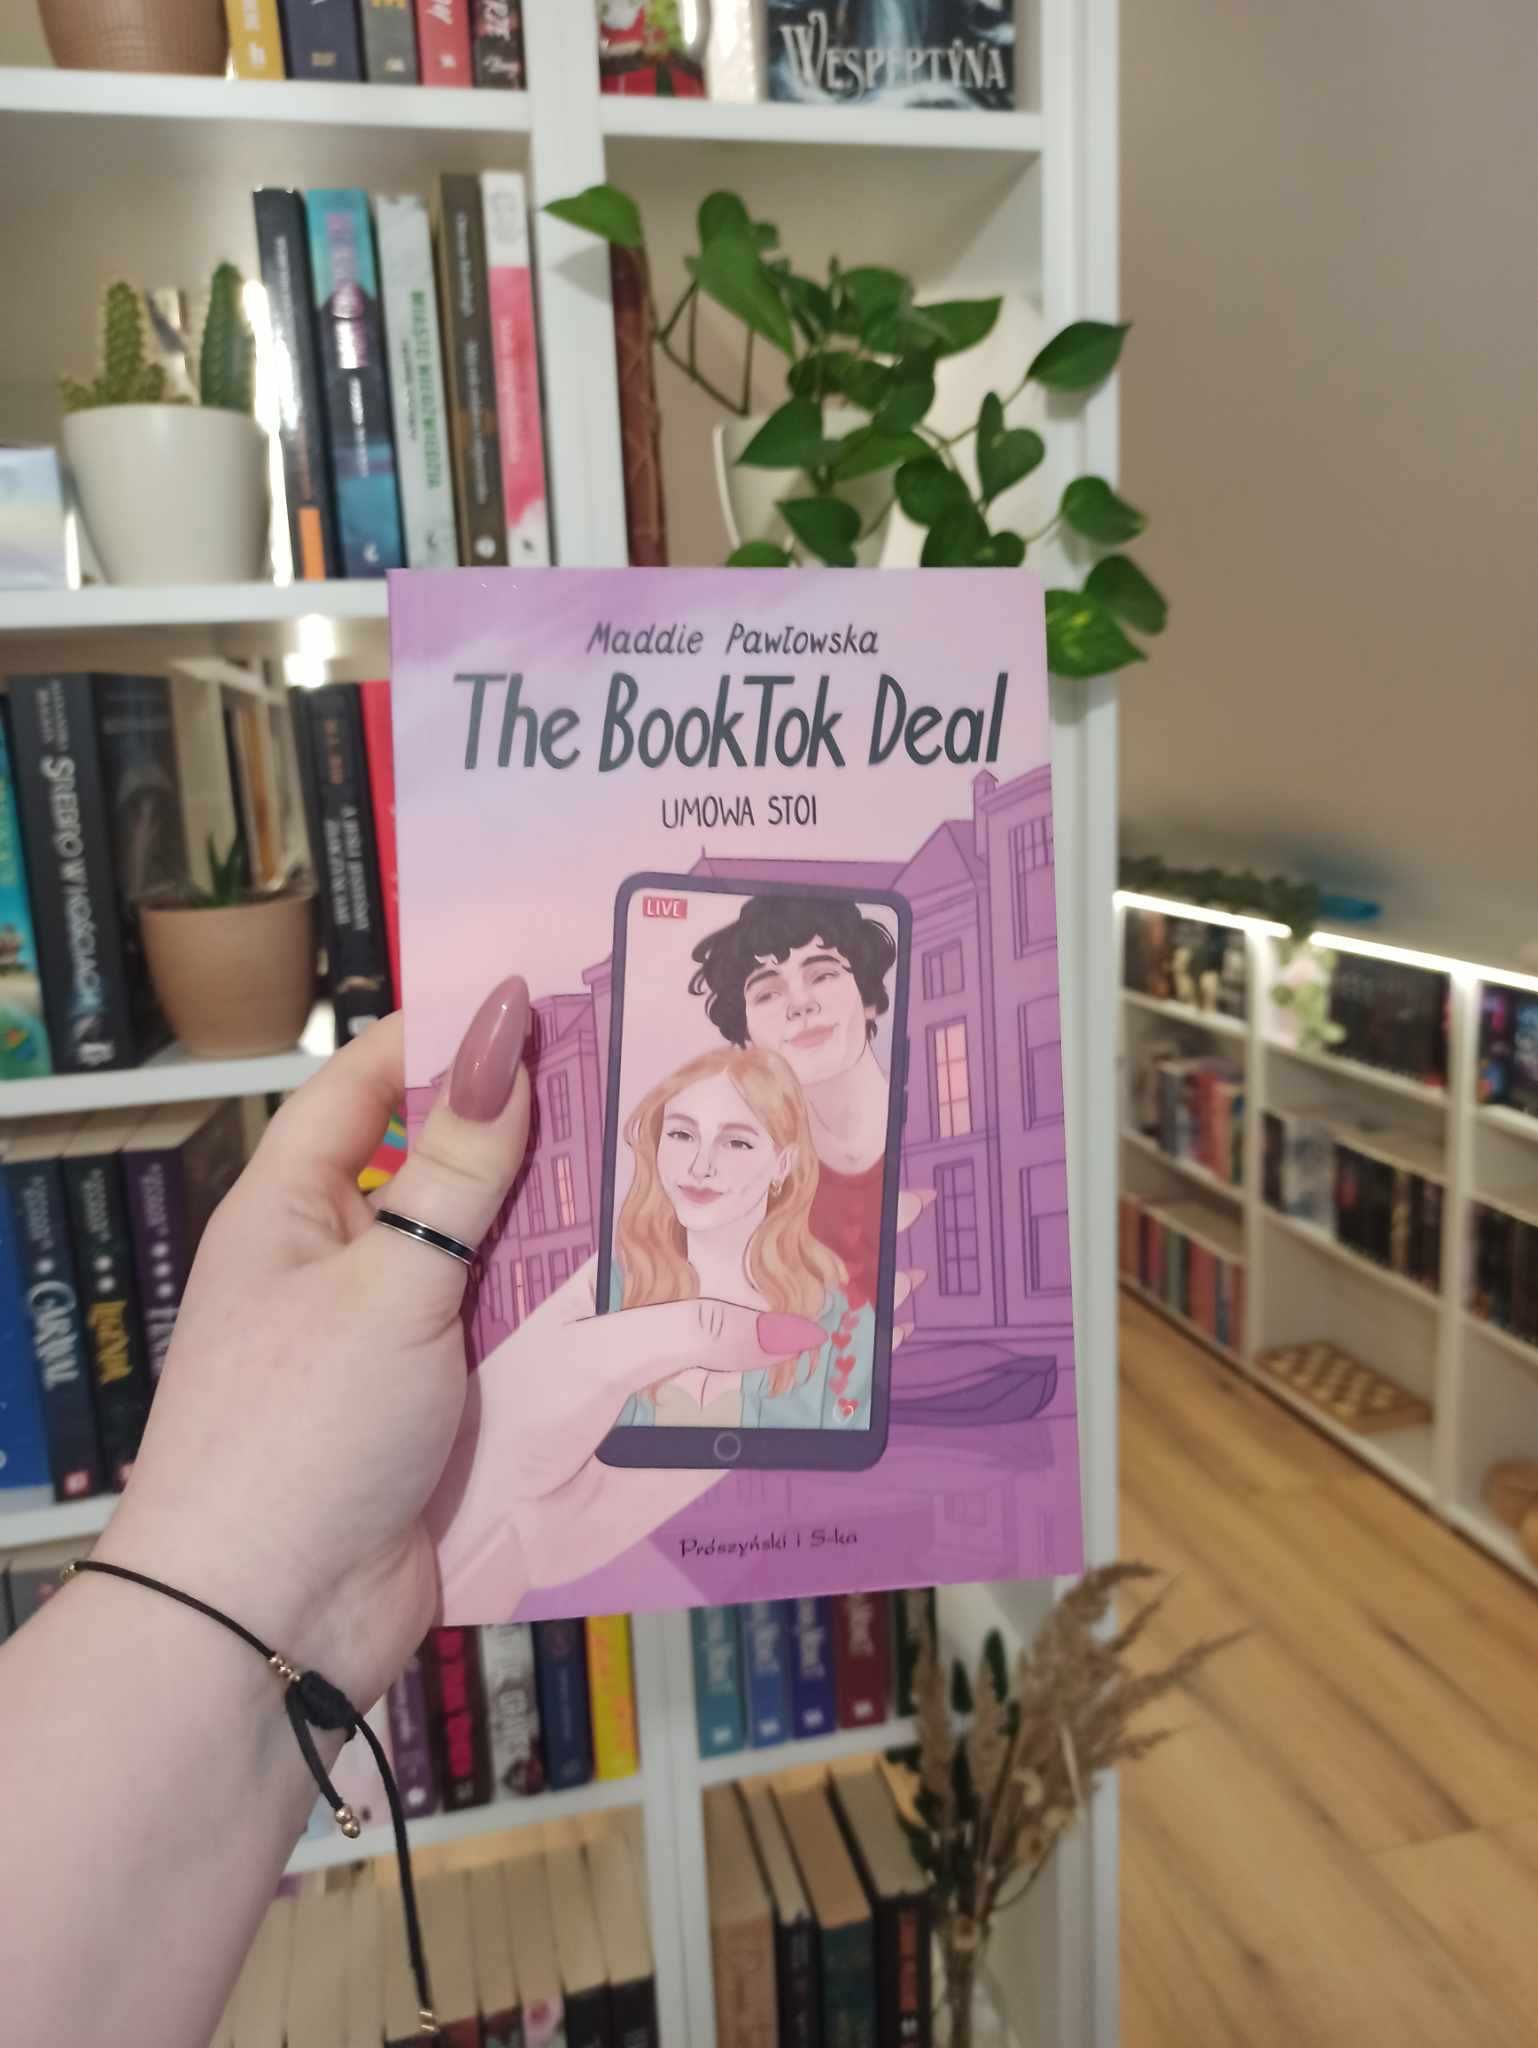 The Booktok Deal